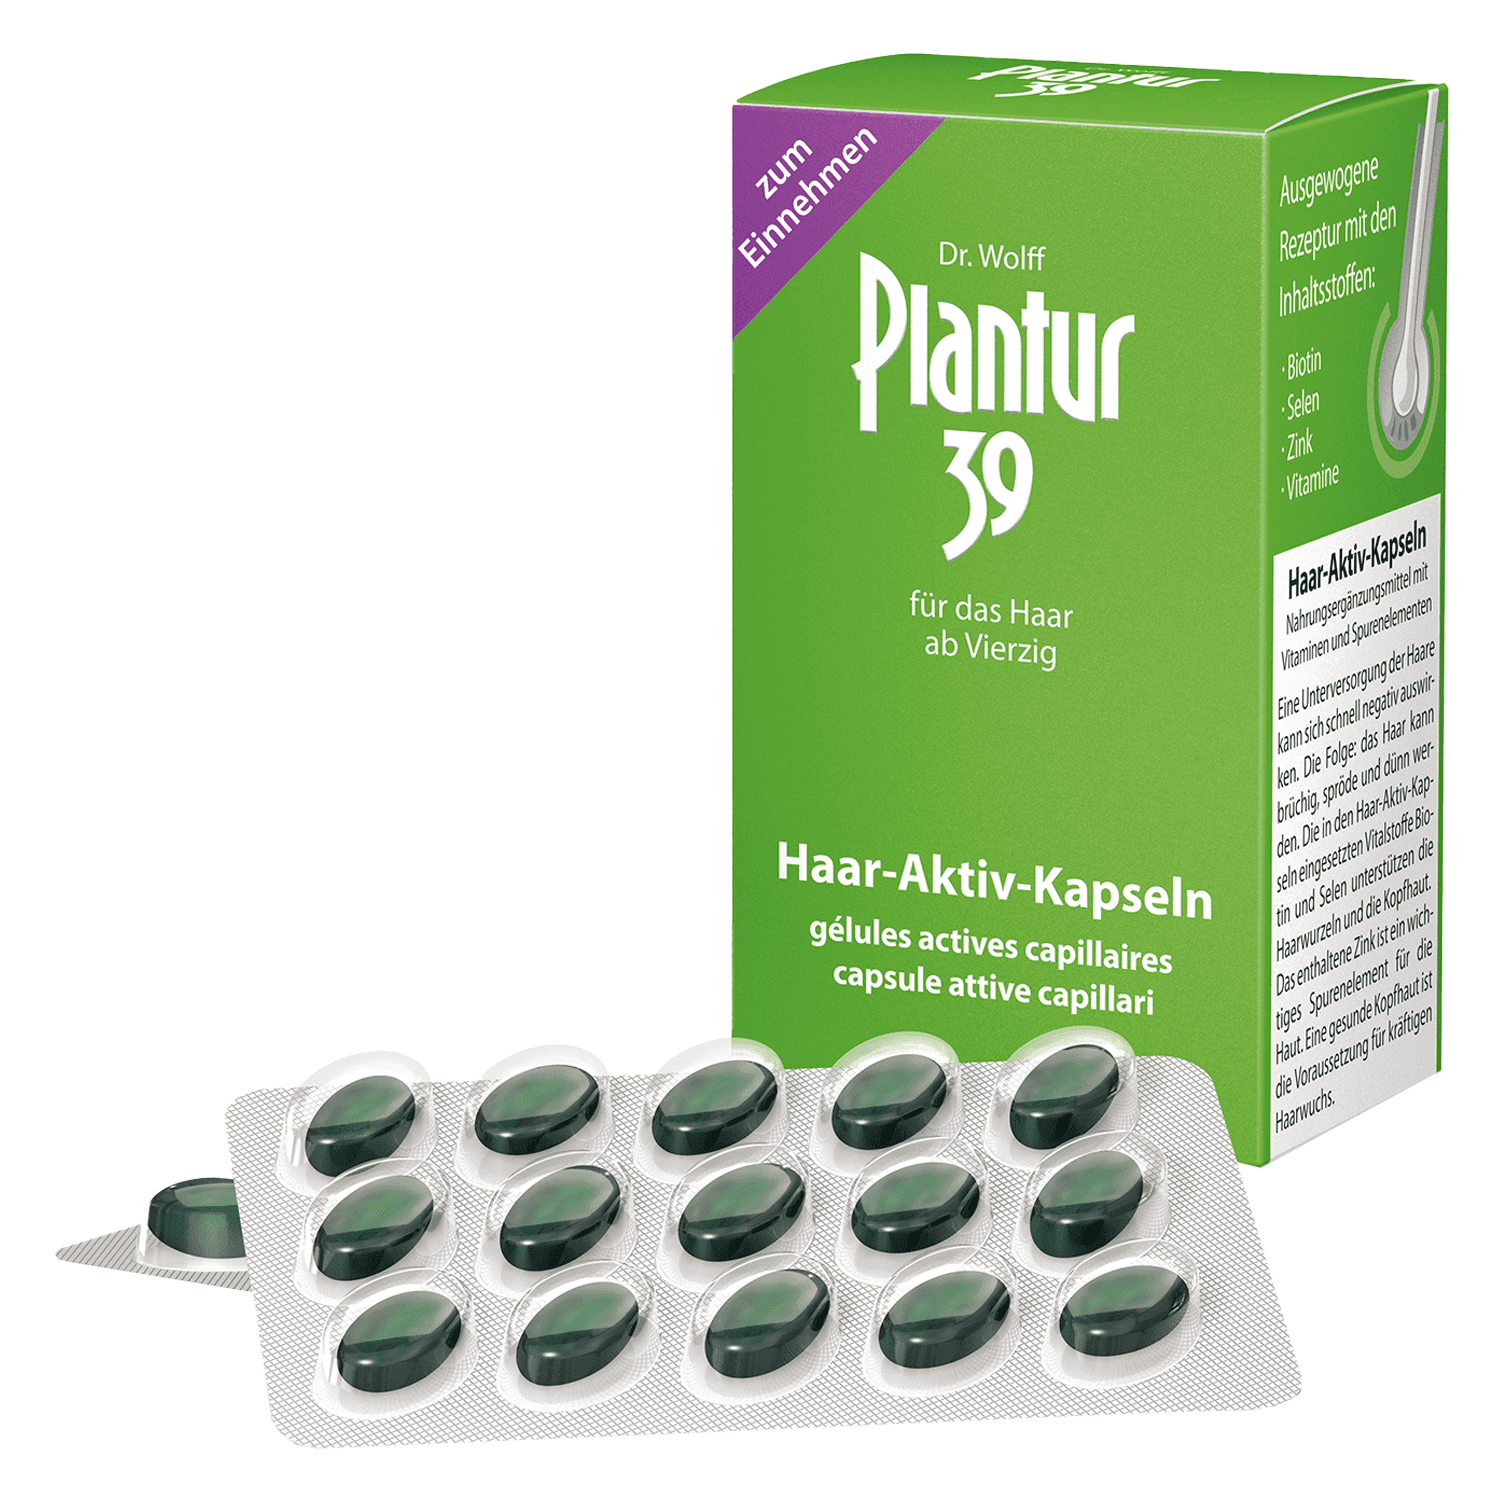 Plantur 39 - Active Hair Capsules